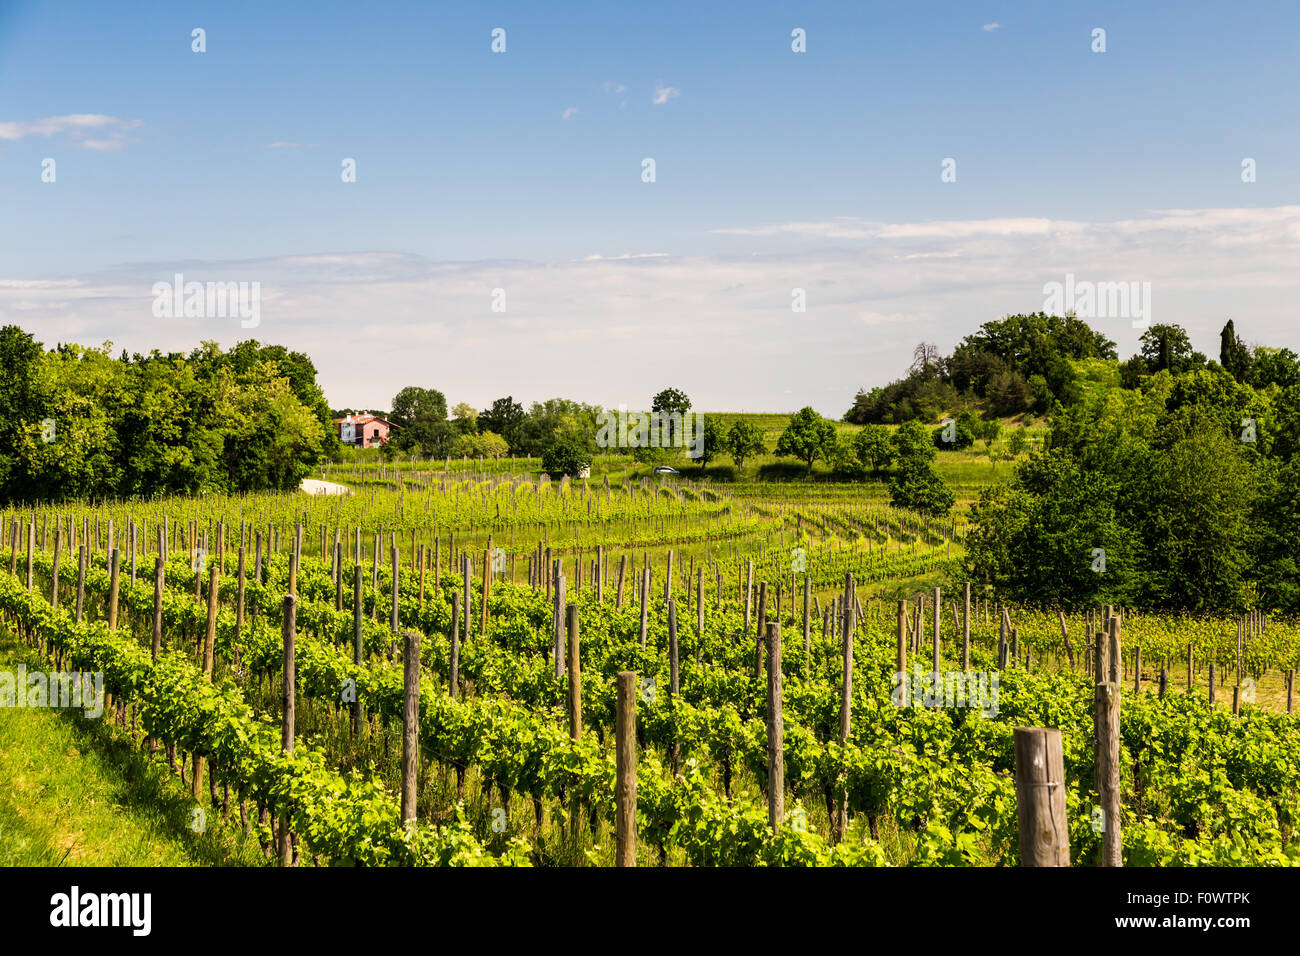 La culture de la vigne dans la campagne italienne dans un jour d'été orageux Banque D'Images